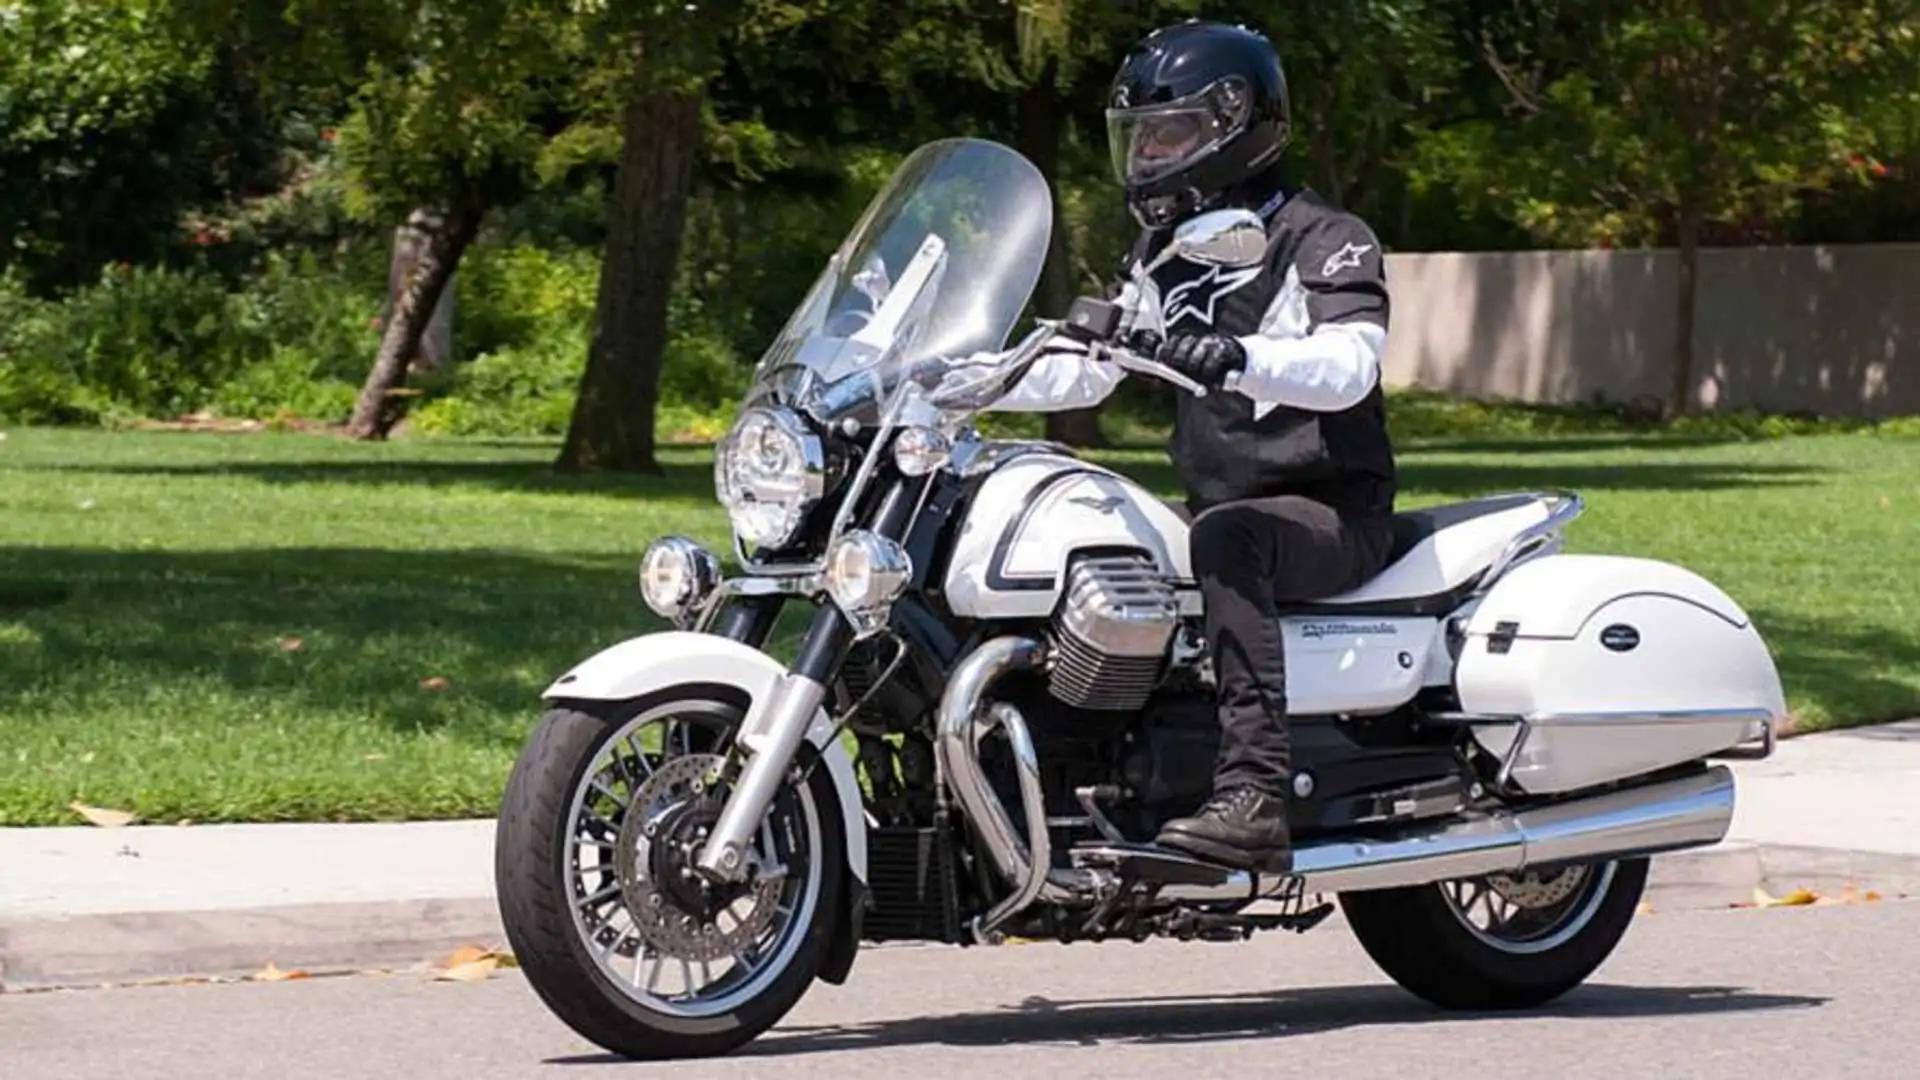 motos 1400 - Cuántos caballos tiene una Kawasaki 1400 GTR